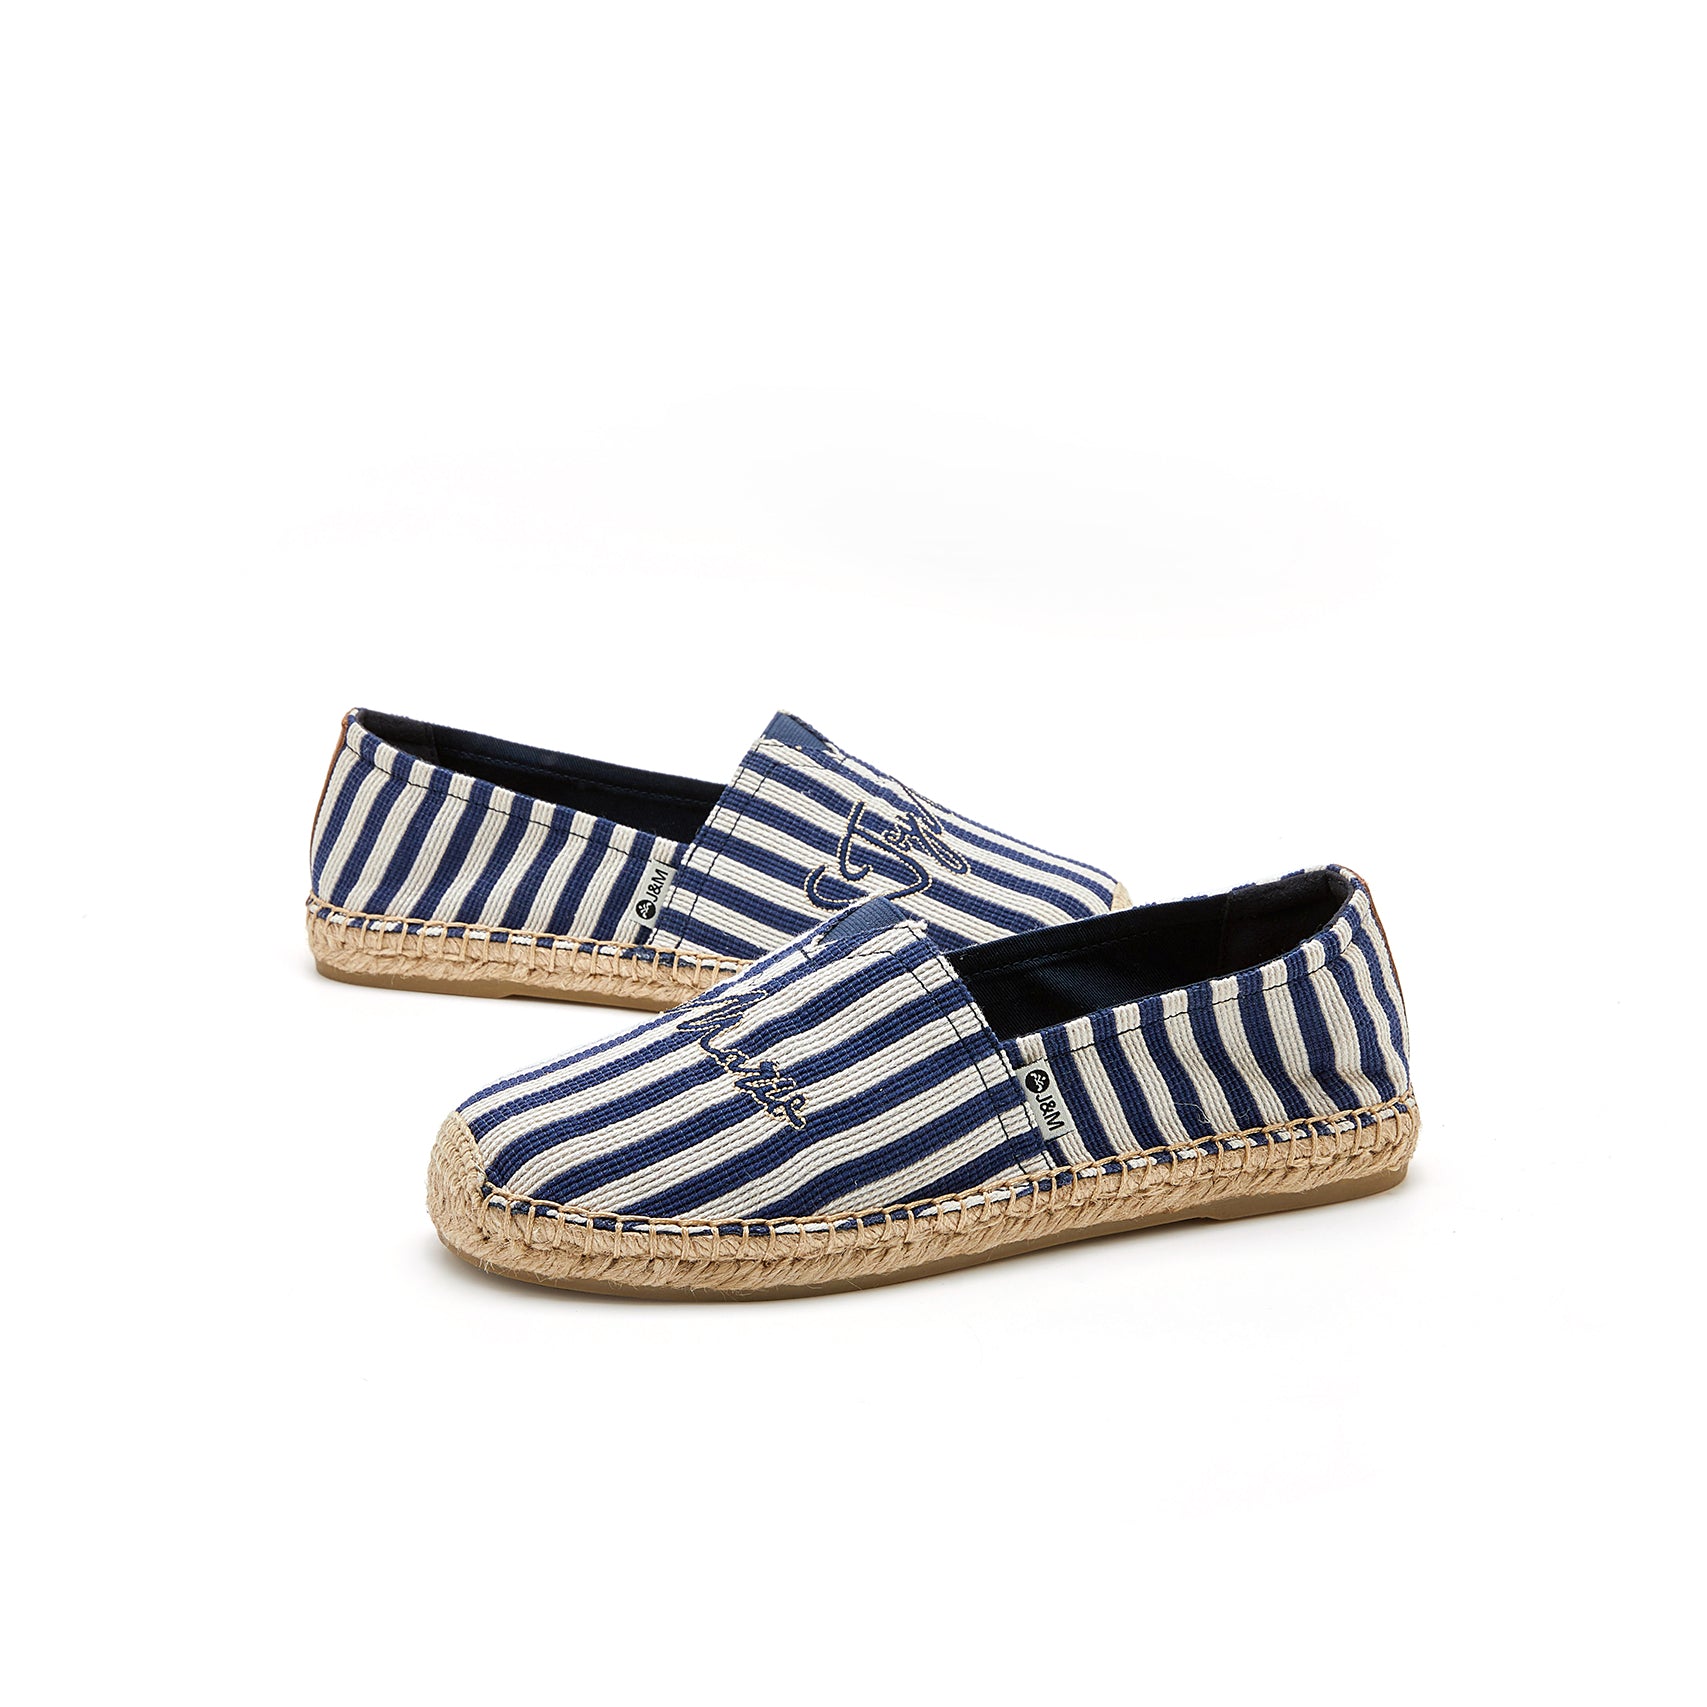 JOY&MARIO Handmade Women’s Slip-On Espadrille Stripe Flats in Blue-05325W